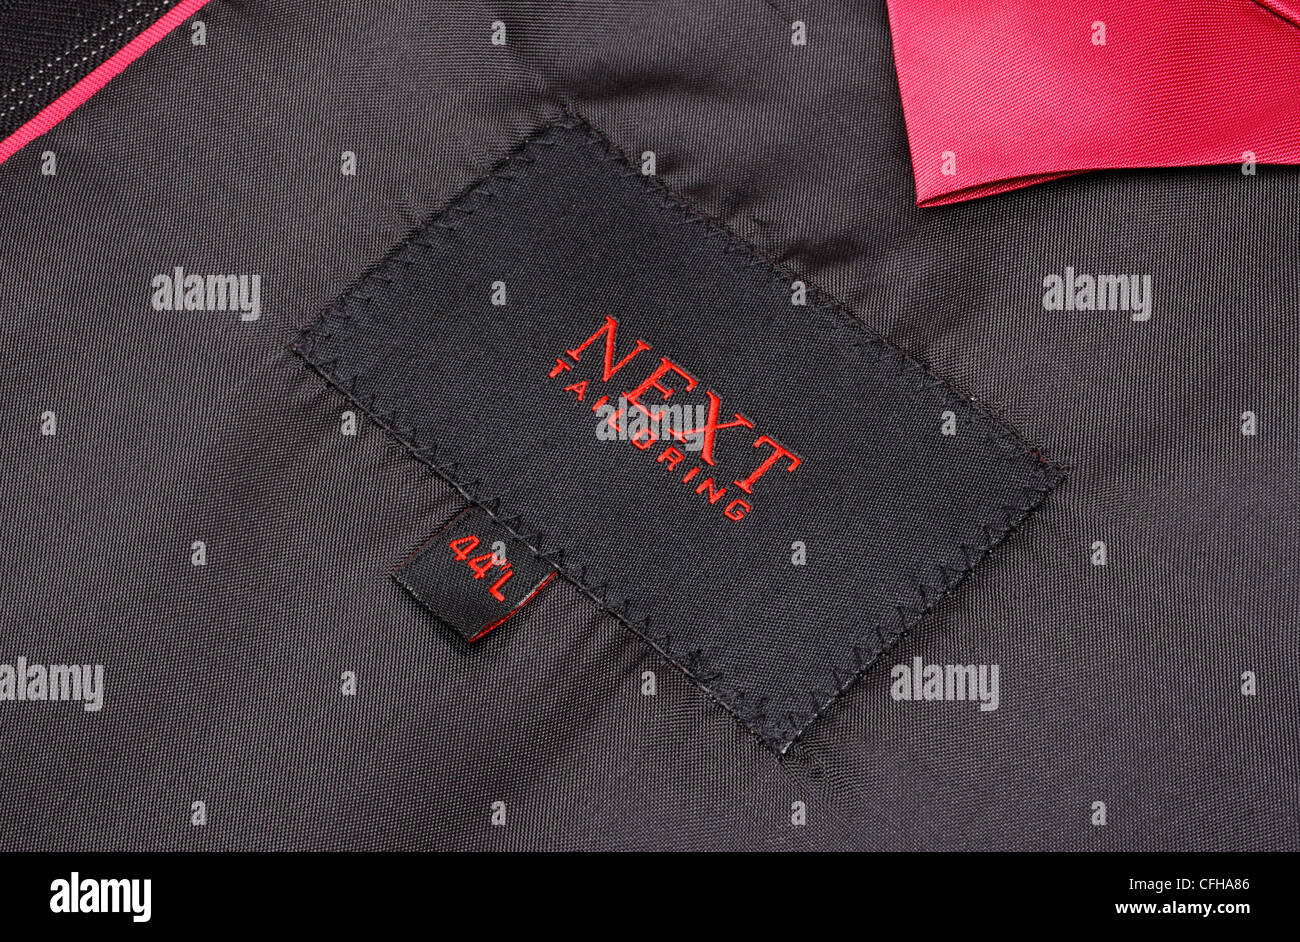 Next clothing brand logo on suit jacket Stock Photo